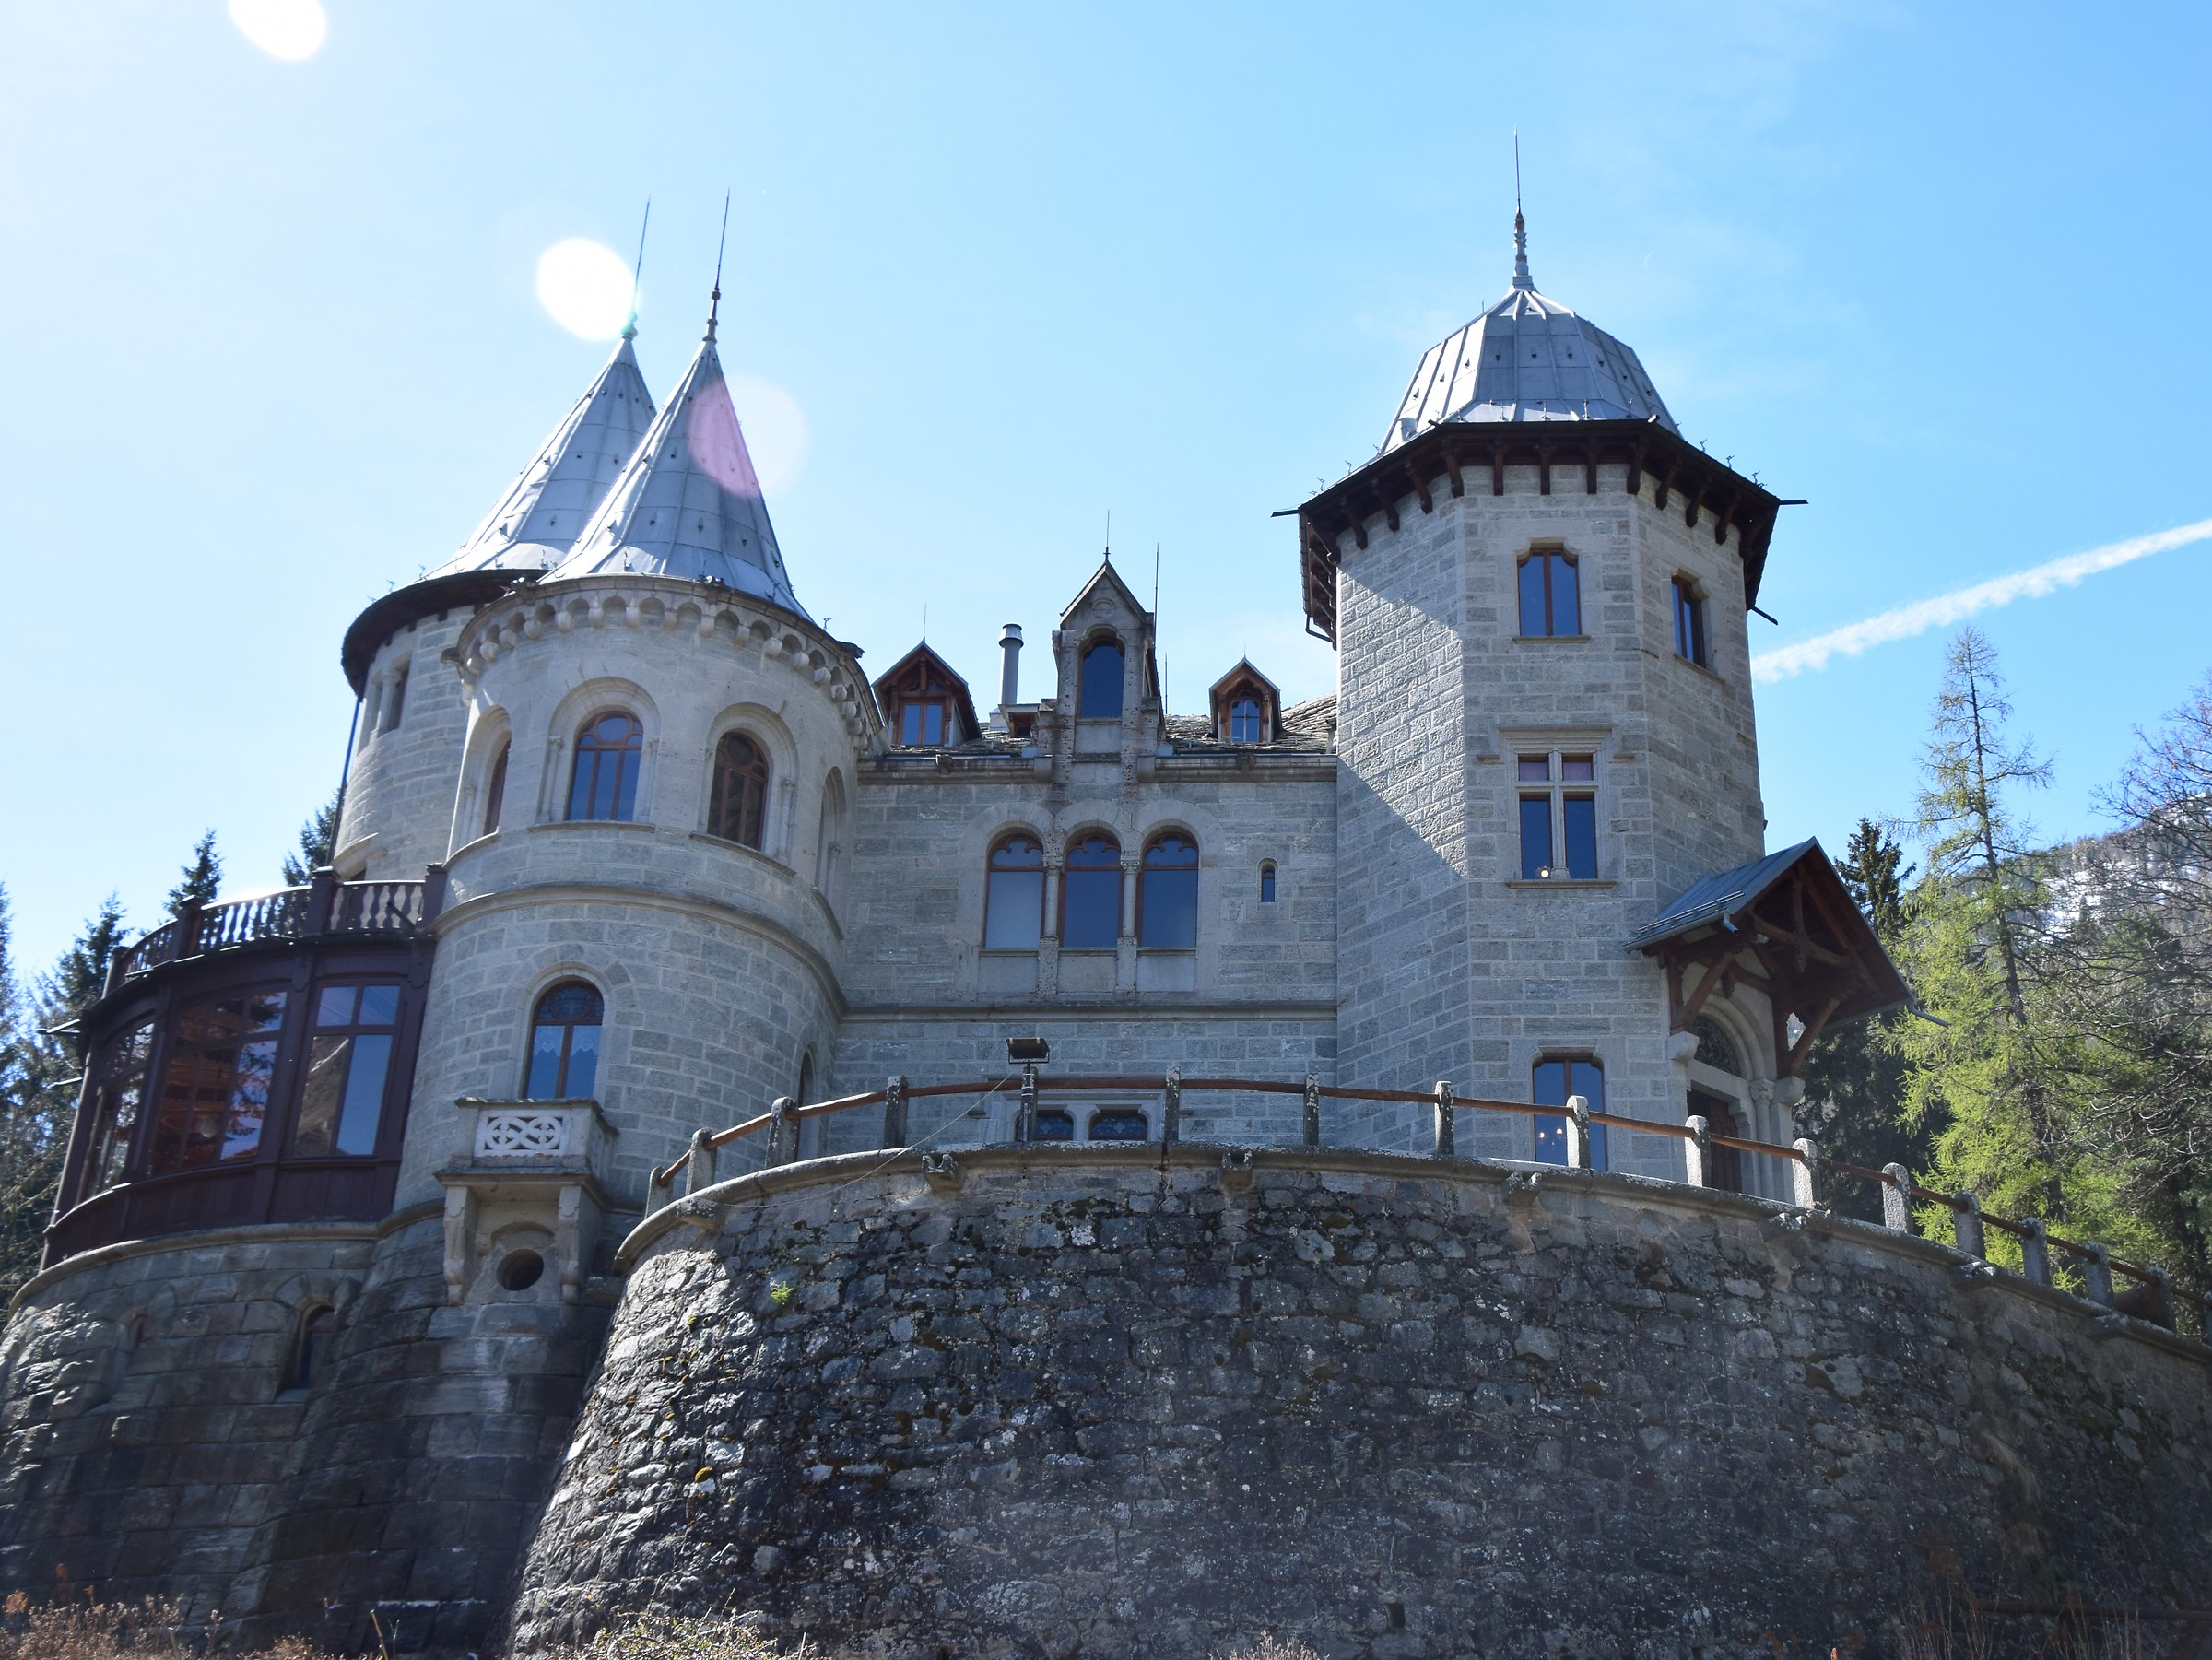 Savoie Castle...